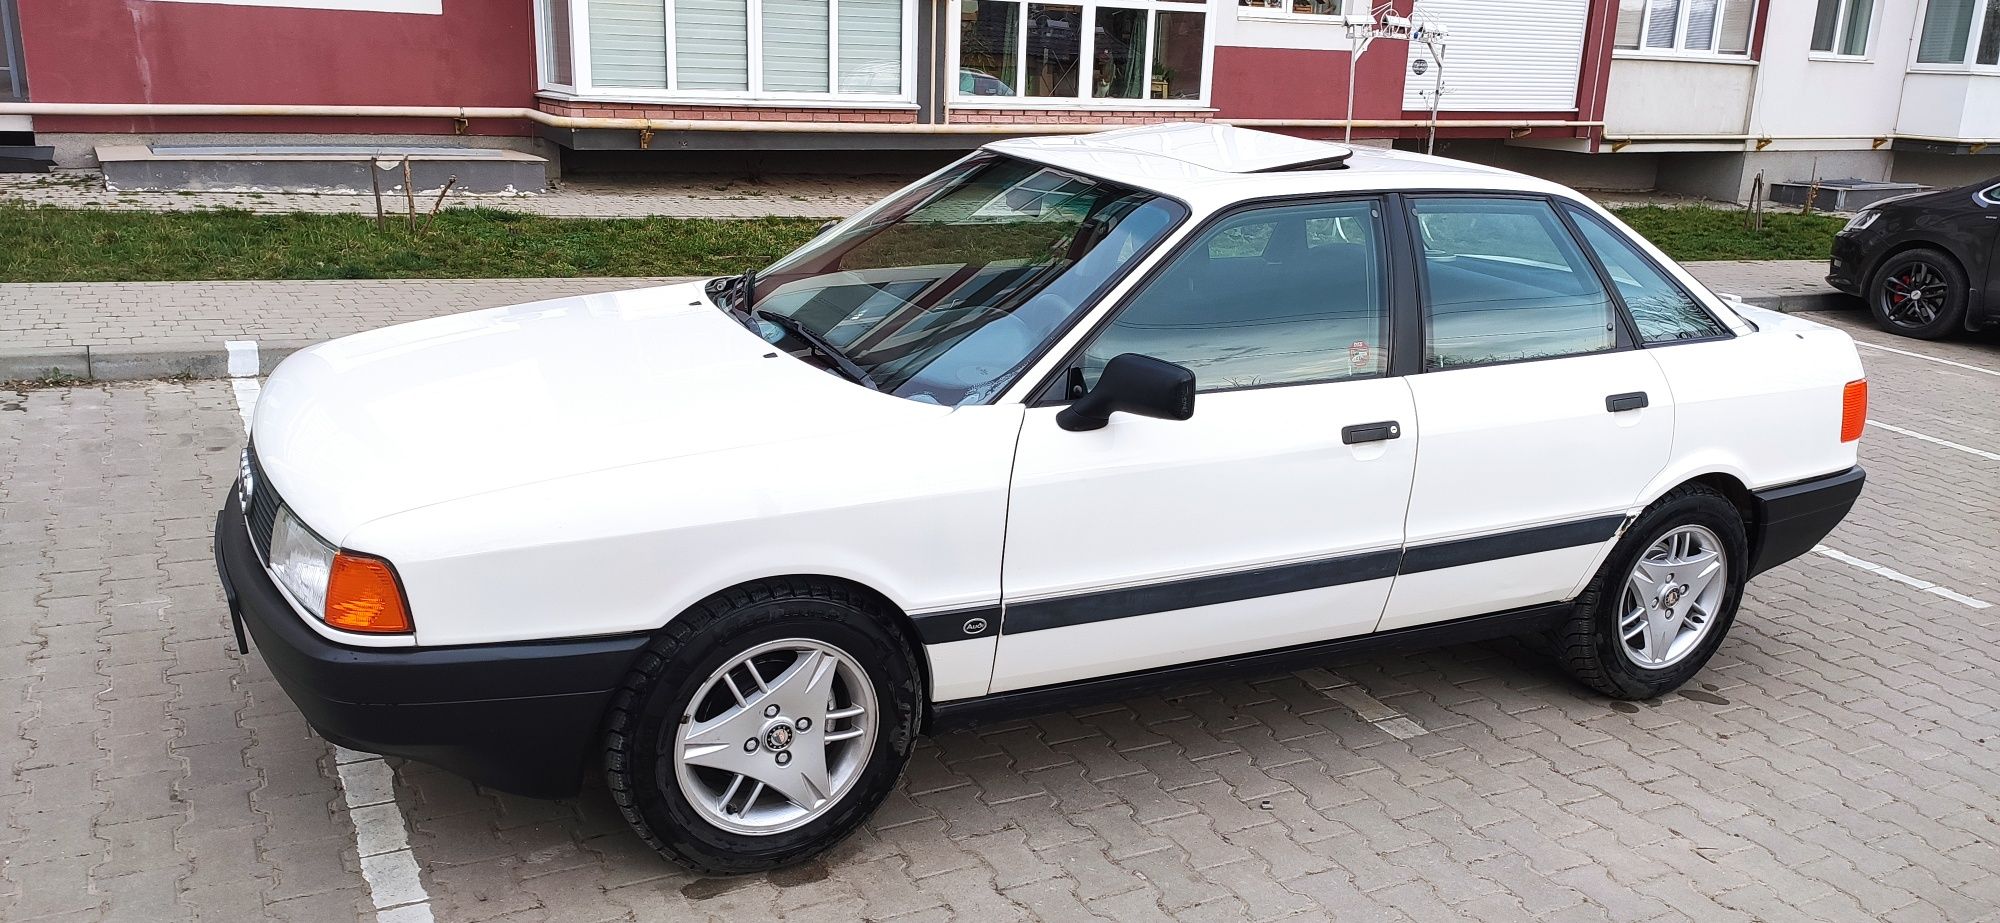 Audi 80 Original